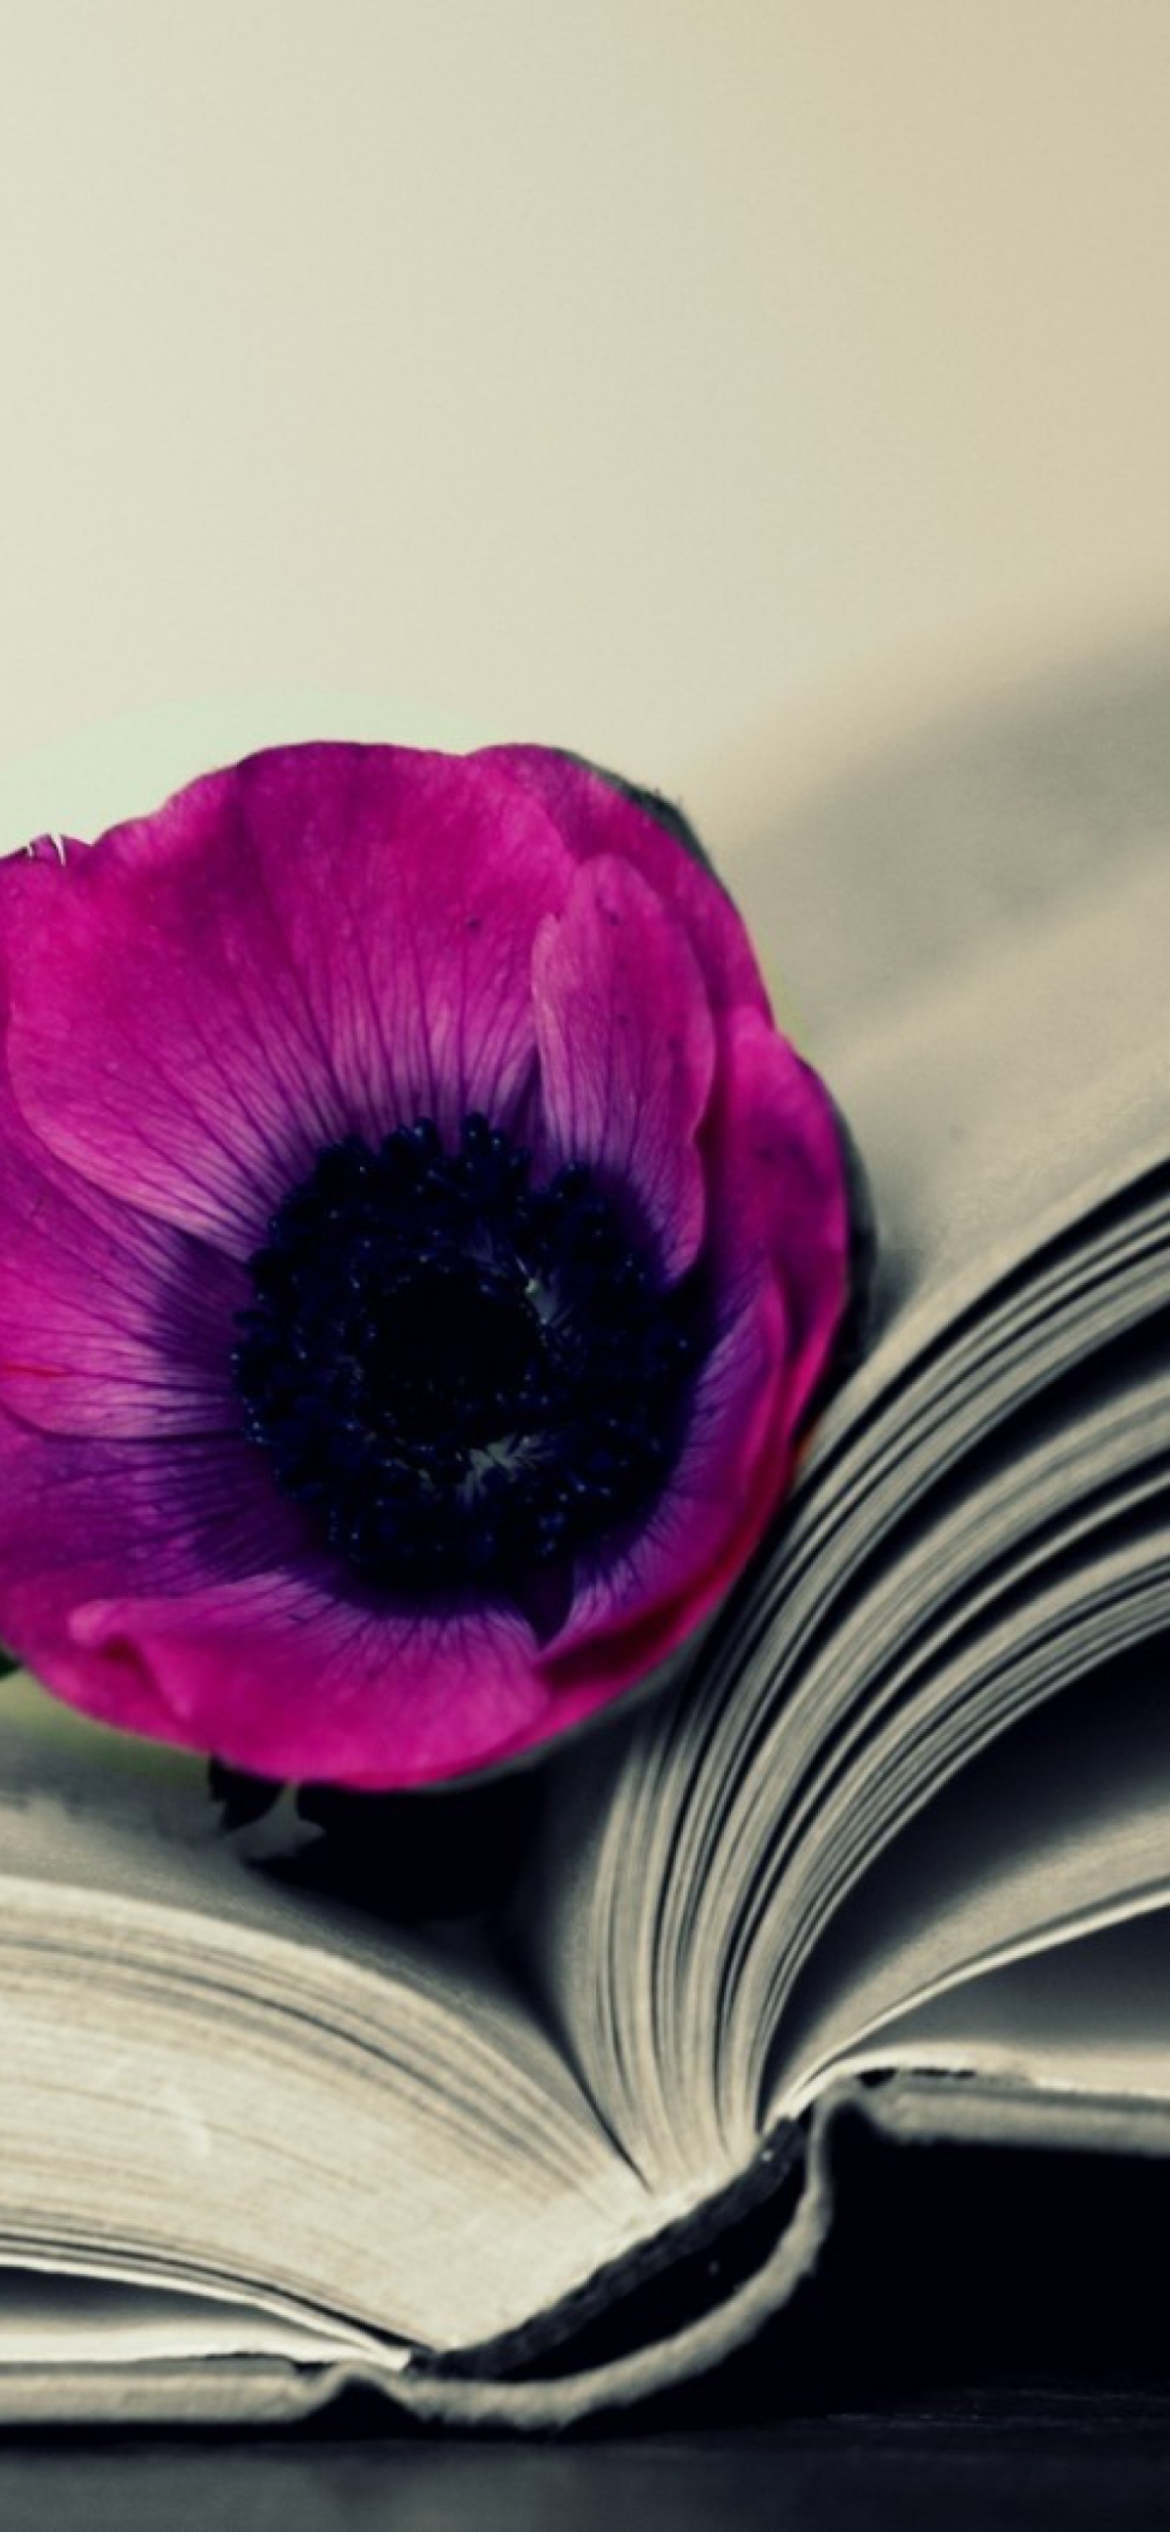 Purple Flower On Open Book wallpaper 1170x2532